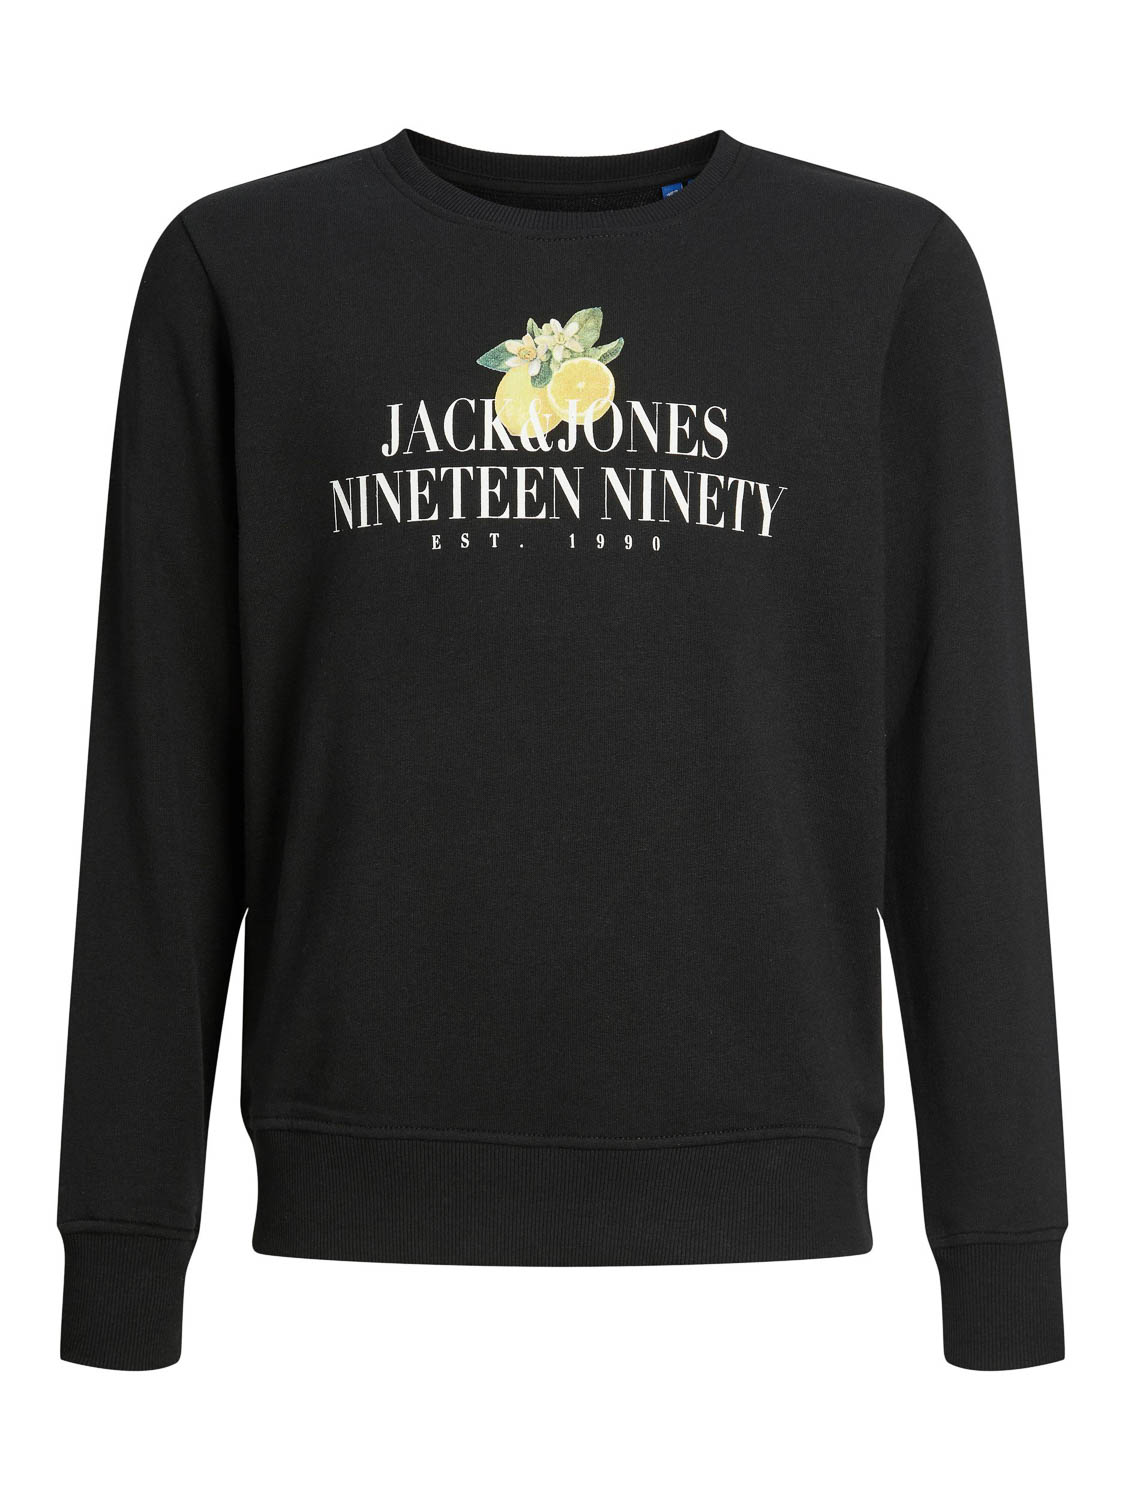 Jack & Jones - Sweater - Black - Maat 152